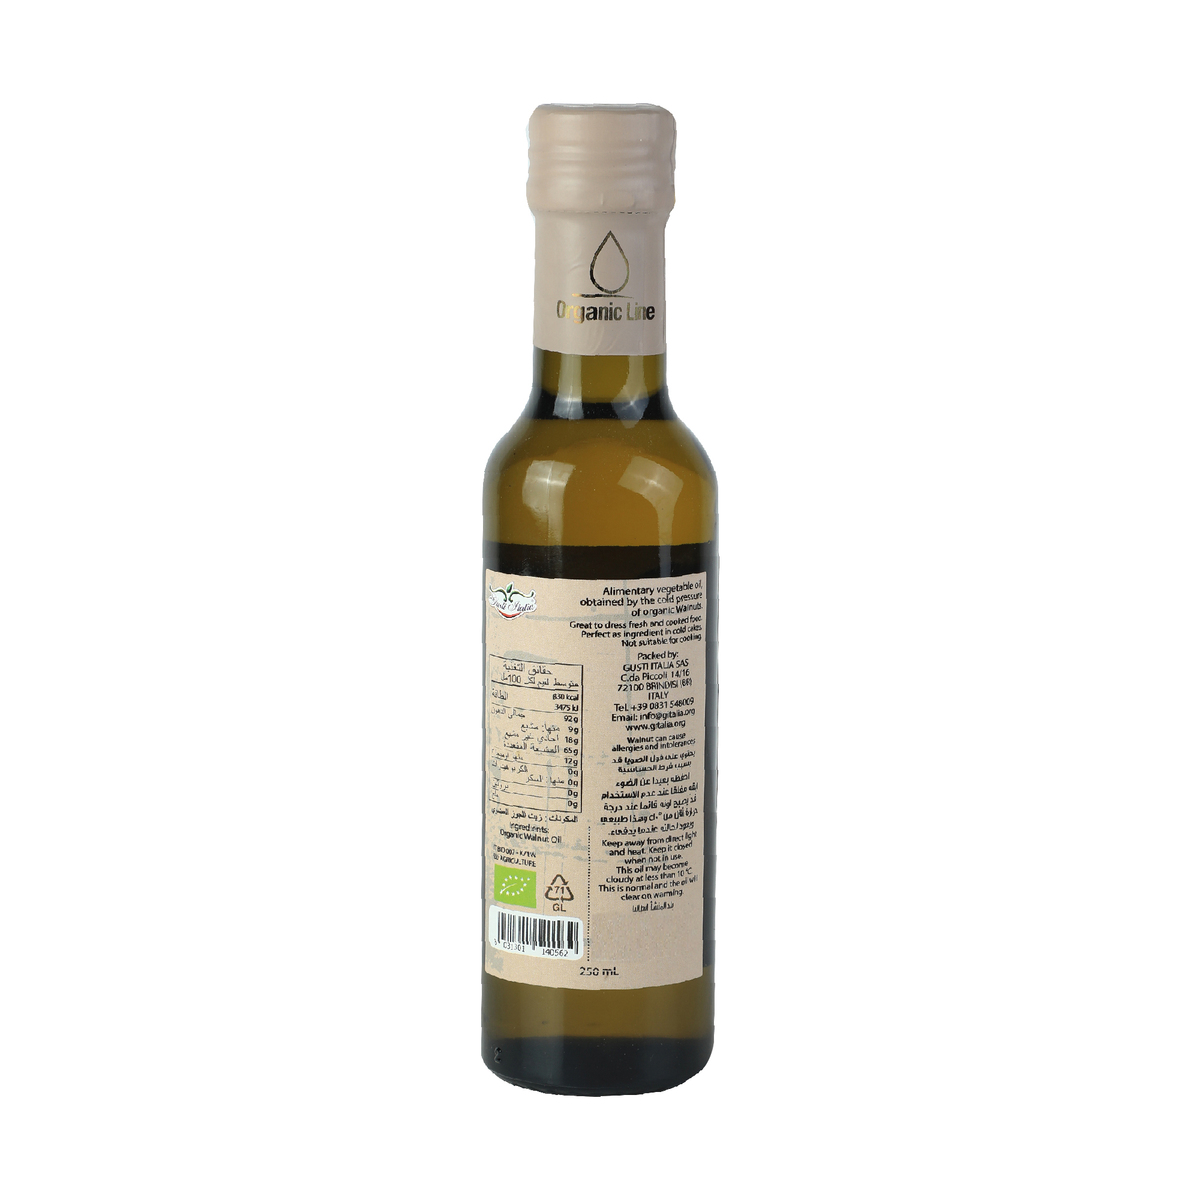 G Italia Organic Walnut Oil 250ml